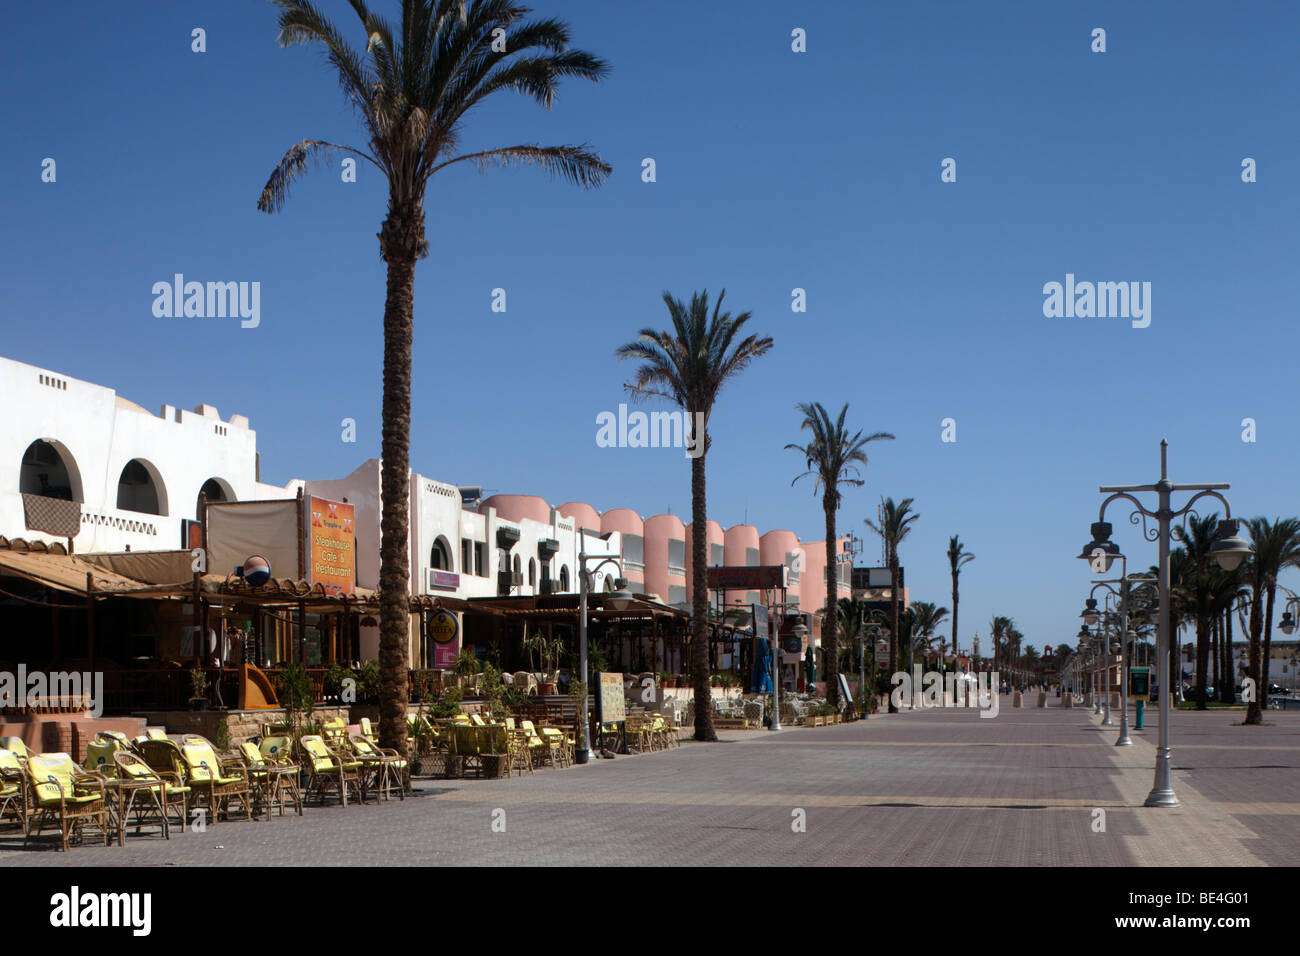 Flaniermeile für Einkaufen und bummeln, Restaurants, Souvenirläden, Dattelpalmen, Yussuf Afifi Road, Hurghada, Ägypten, rot Stockfoto